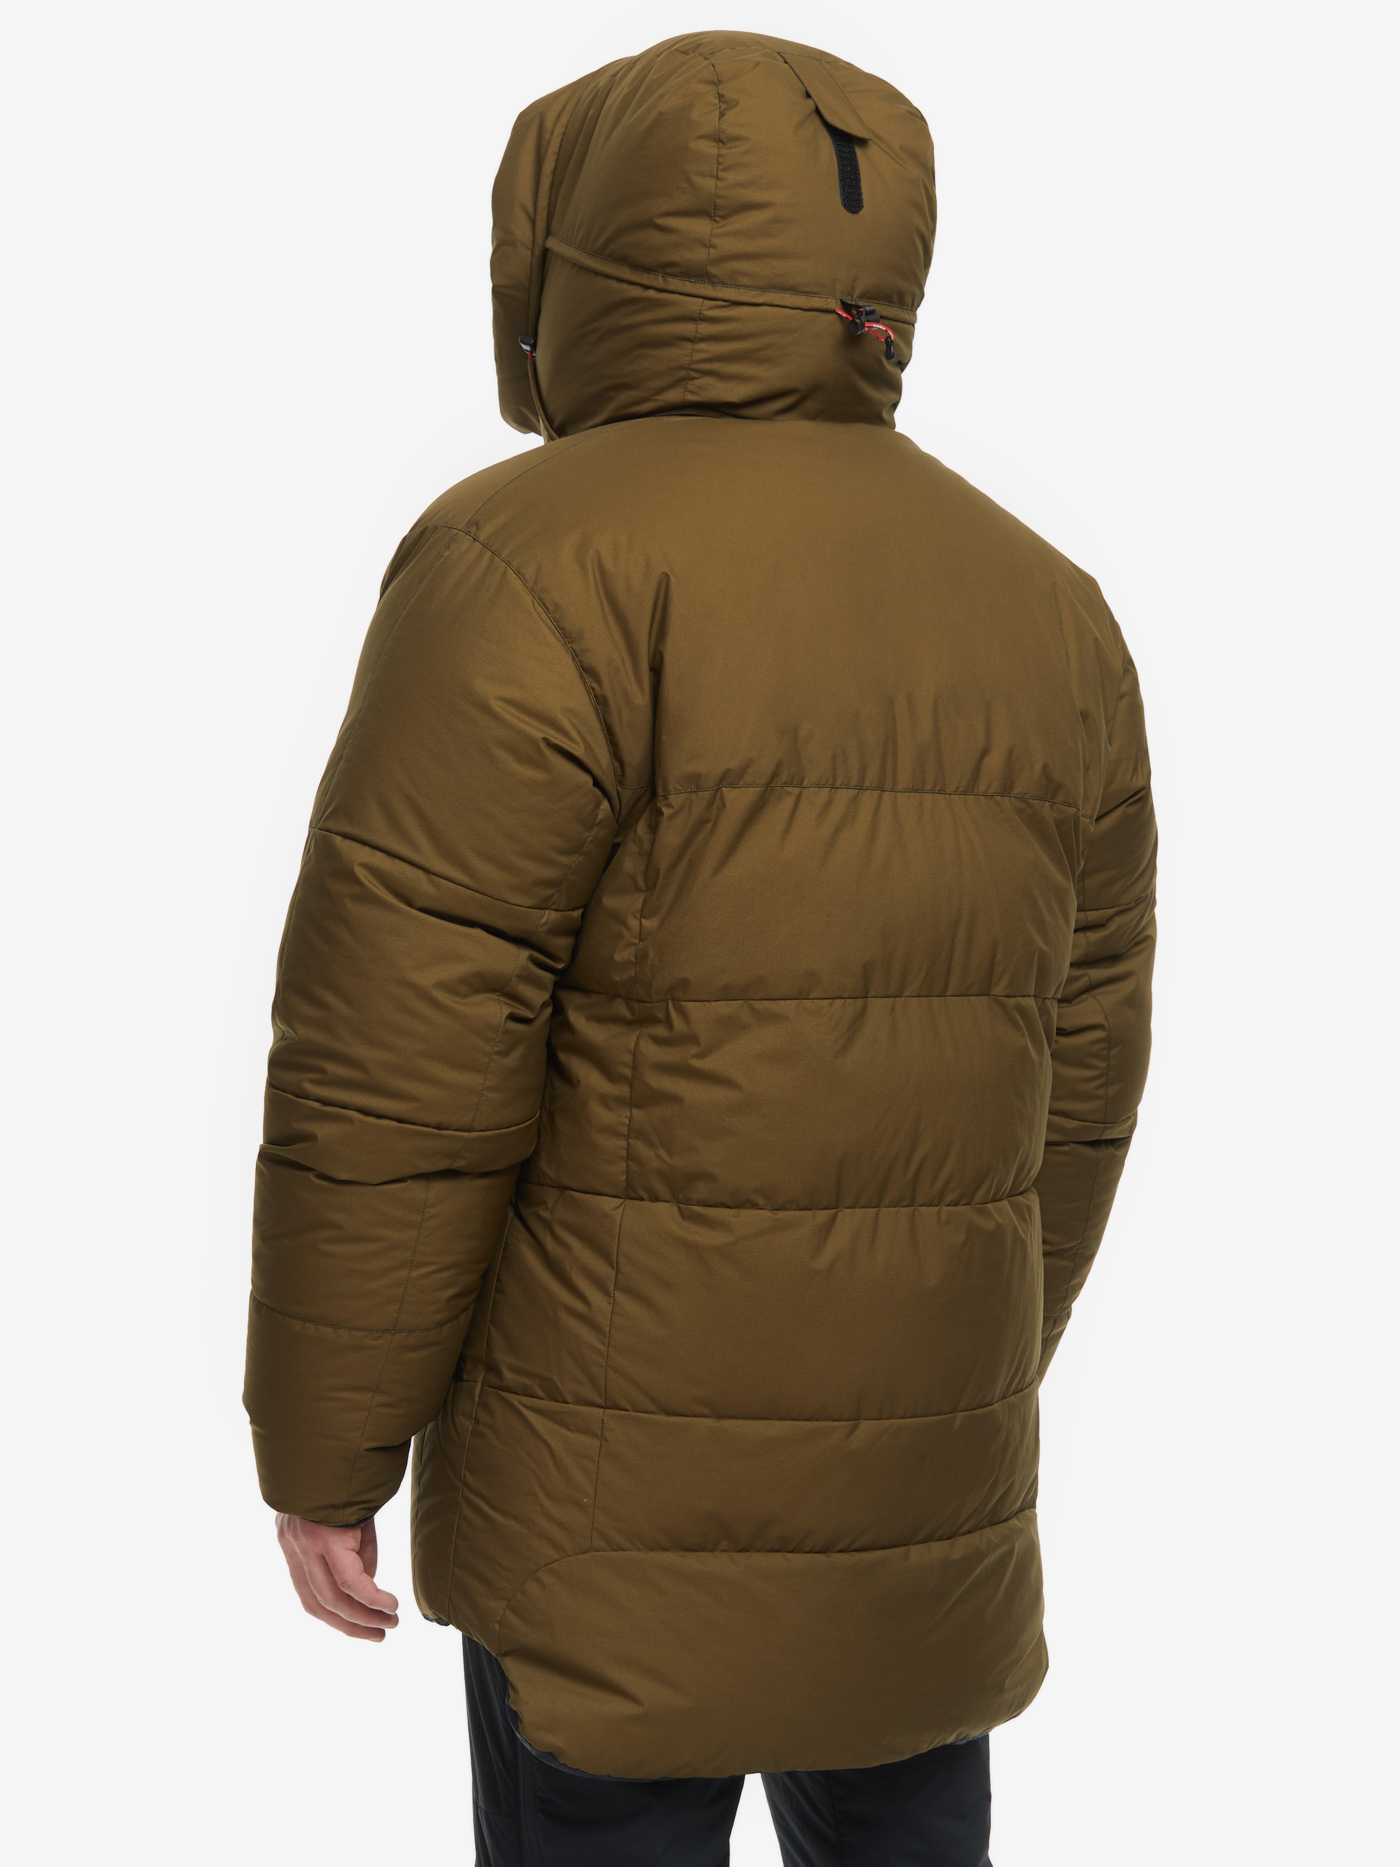 На сегодняшний день куртка помимо того, что является основным элементом, сохраняющим тепло в верхней части тела ребенка, еще и представляет собой атрибут, формирующий стиль.